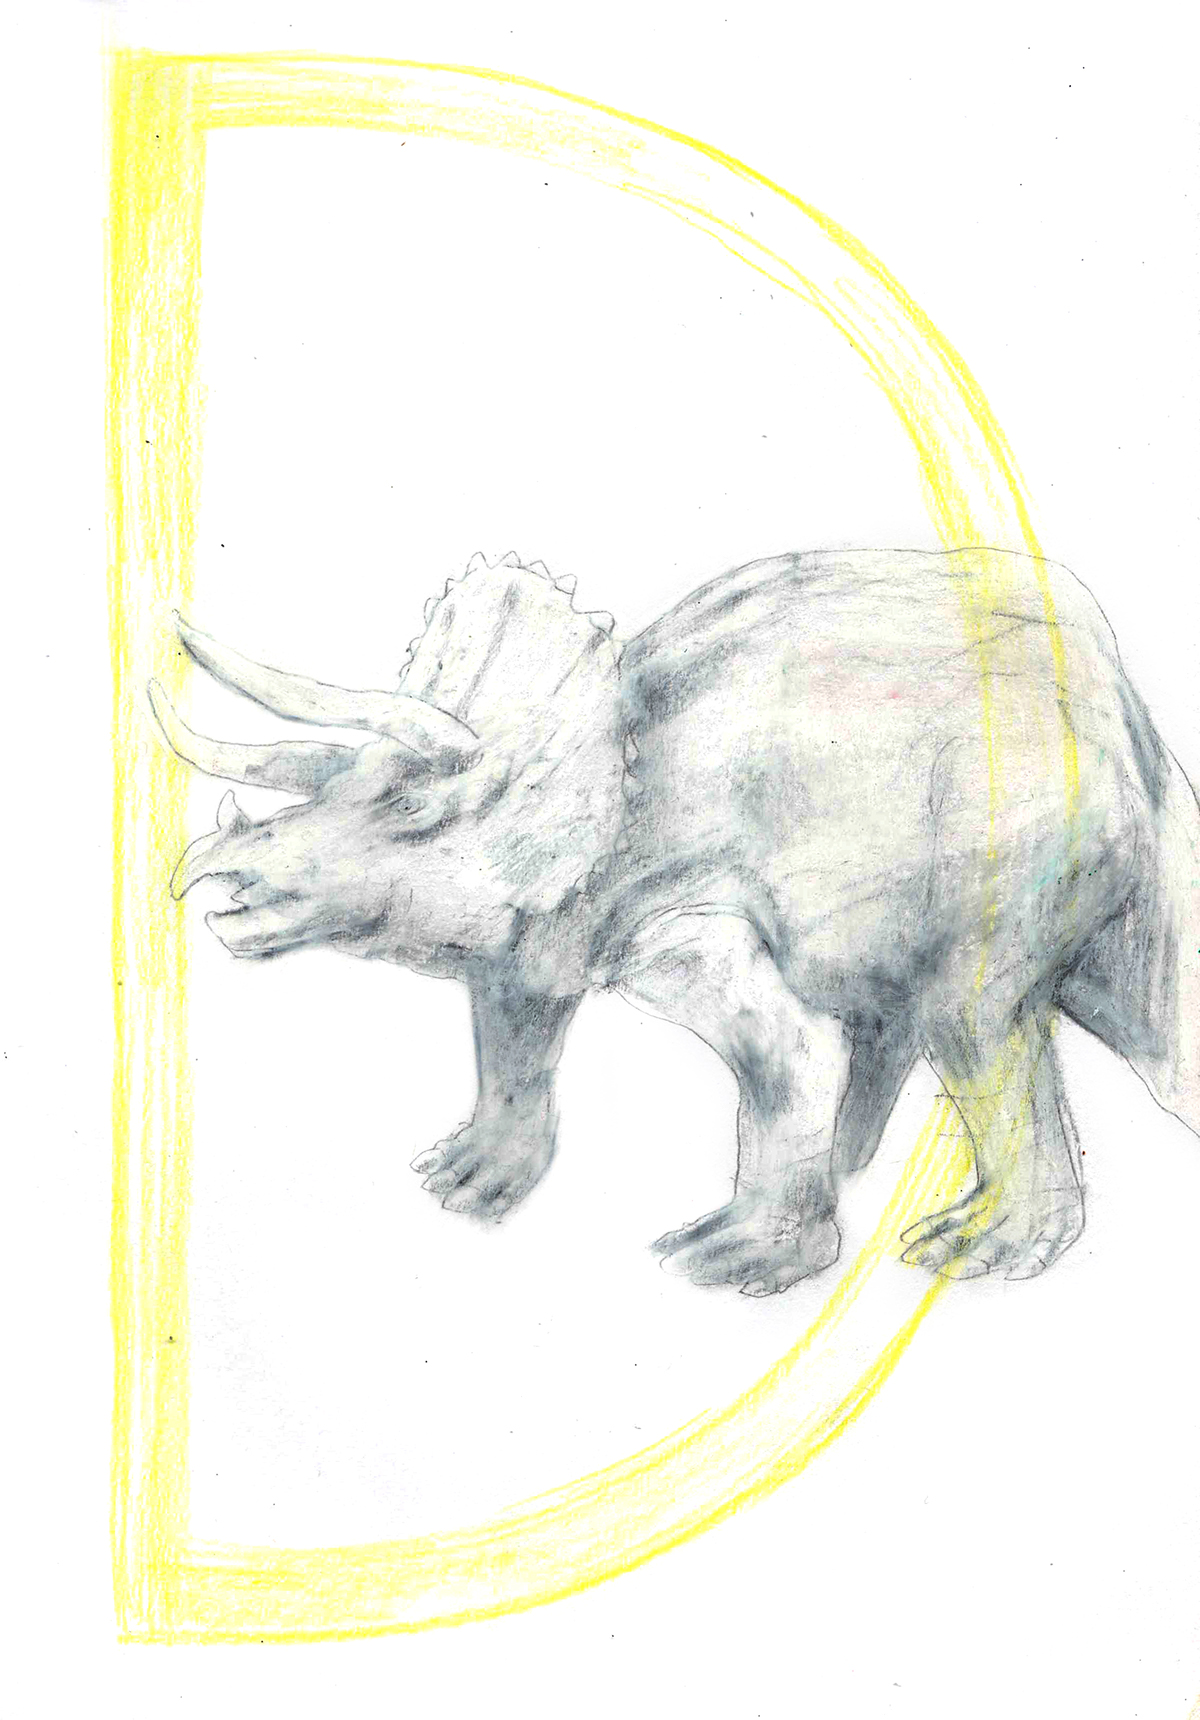 Dinosaurios dinosaurs triceratops tiranosaurio tyrannosaurus dibujo bocetos sketchbook lapiz pencil ink tinta